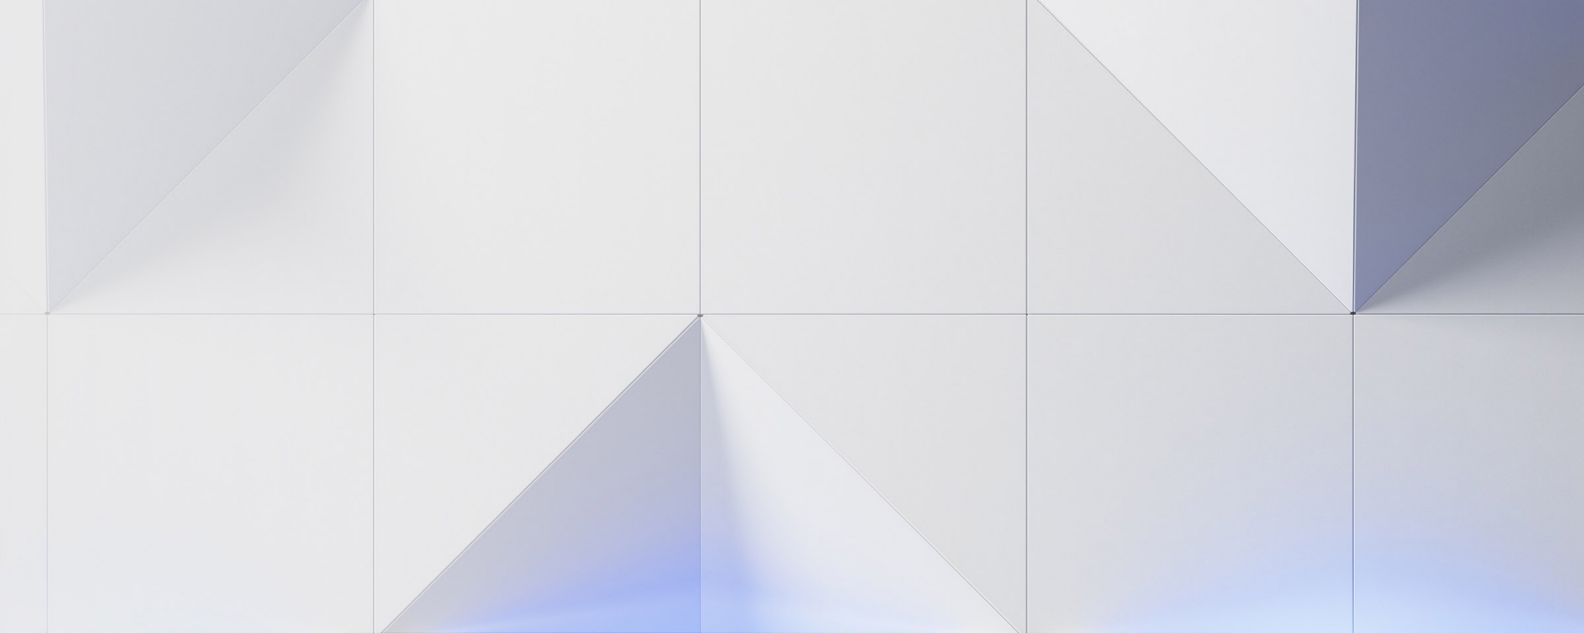 三角形と四角形を描いた抽象的なグラフィック